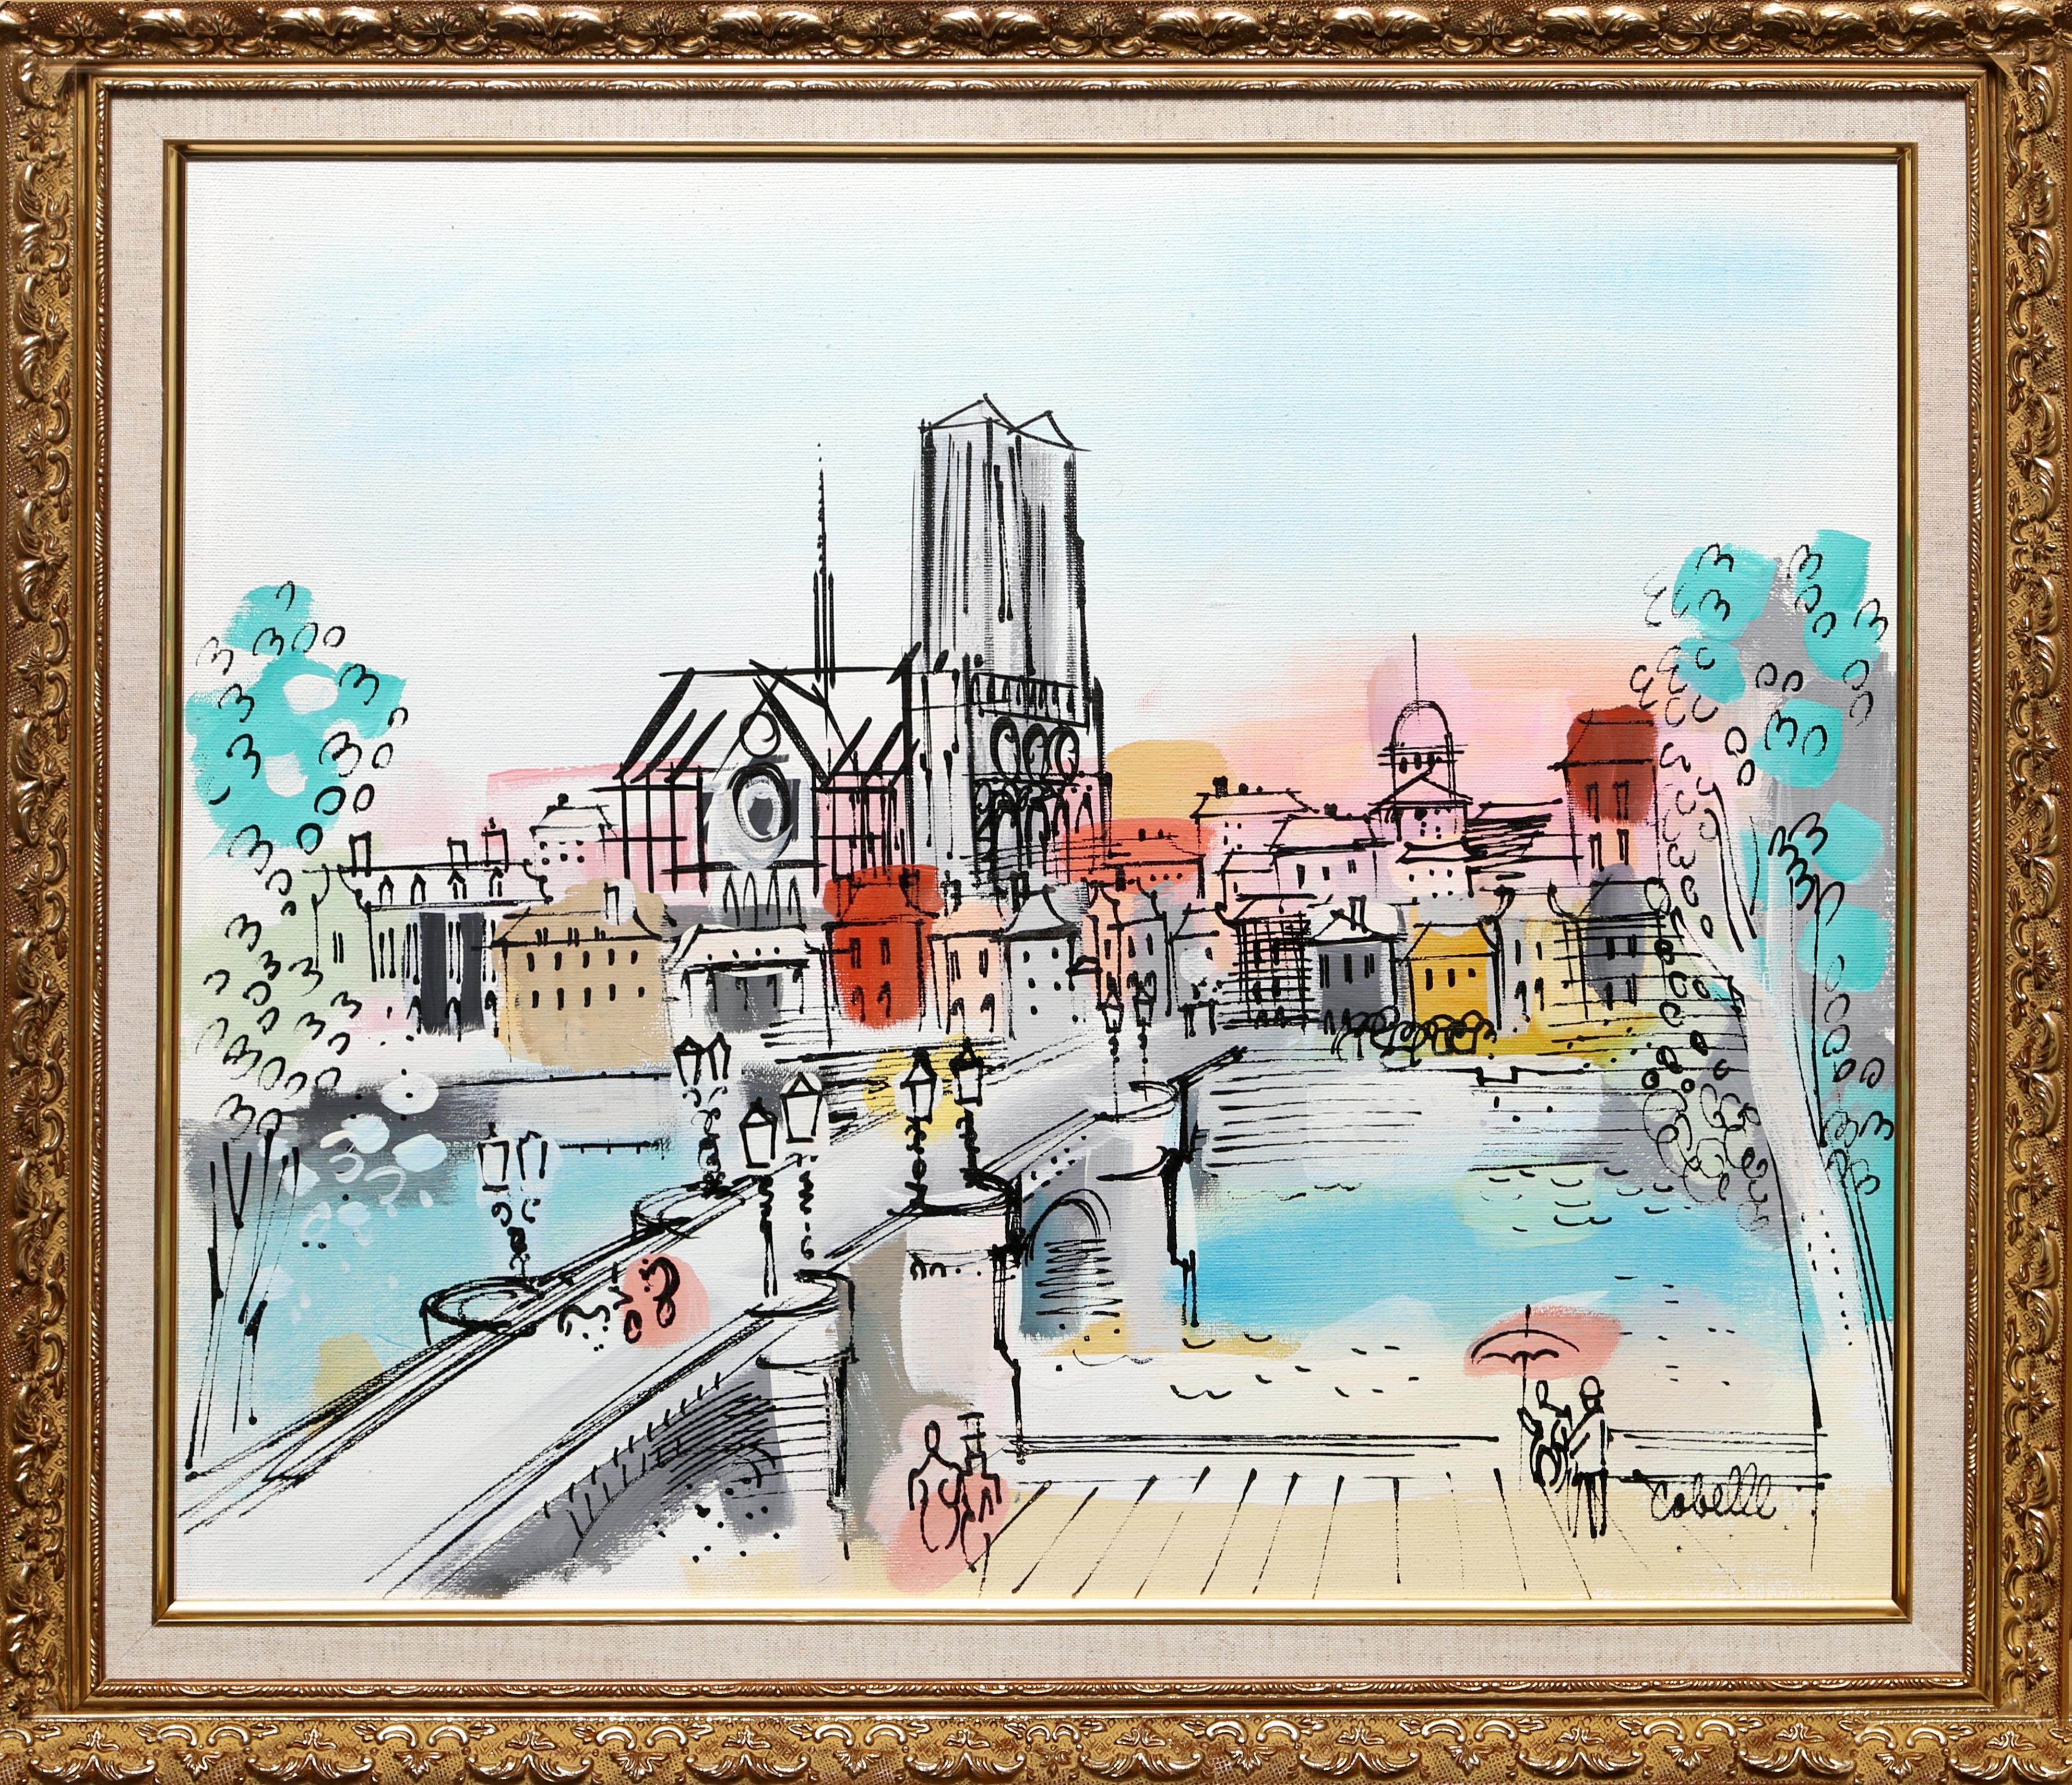 Ein helles und belebtes Pariser Stadtbild des französischen Künstlers Charles Cobelle. Signiert unten rechts.

Größe: 20 x 24 Zoll (50,8 x 60,96 cm)
Rahmengröße: 24,5 x 28,5 Zoll